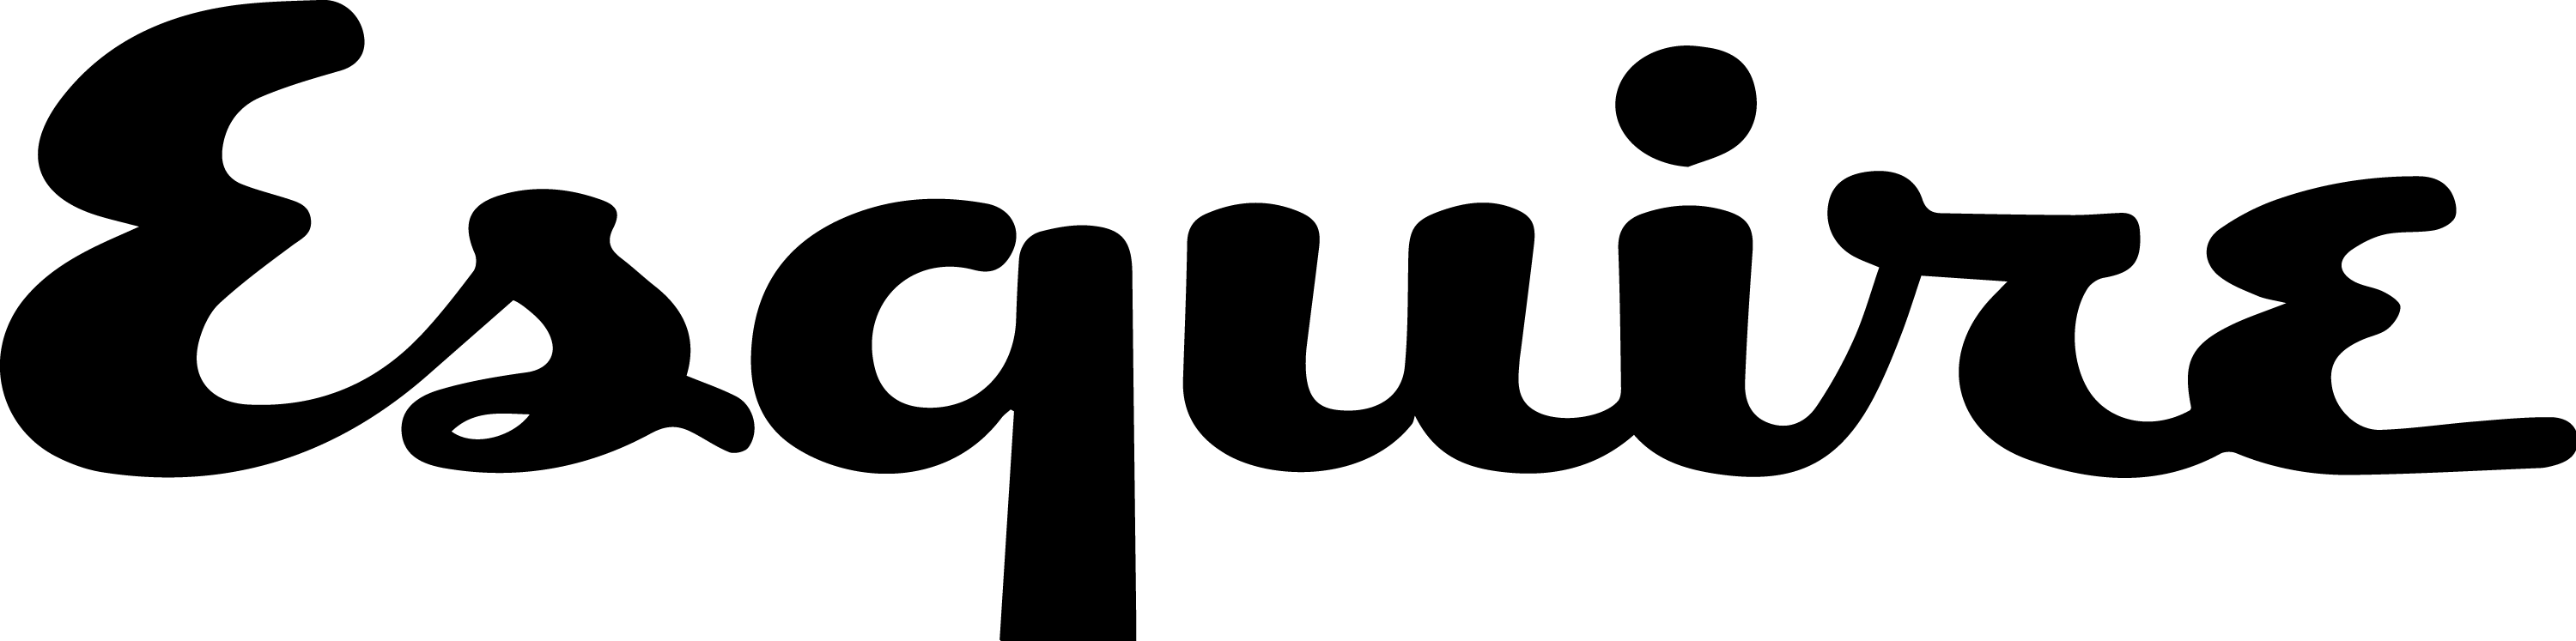 Nate Hopper - Esquire Logo (3000x747)